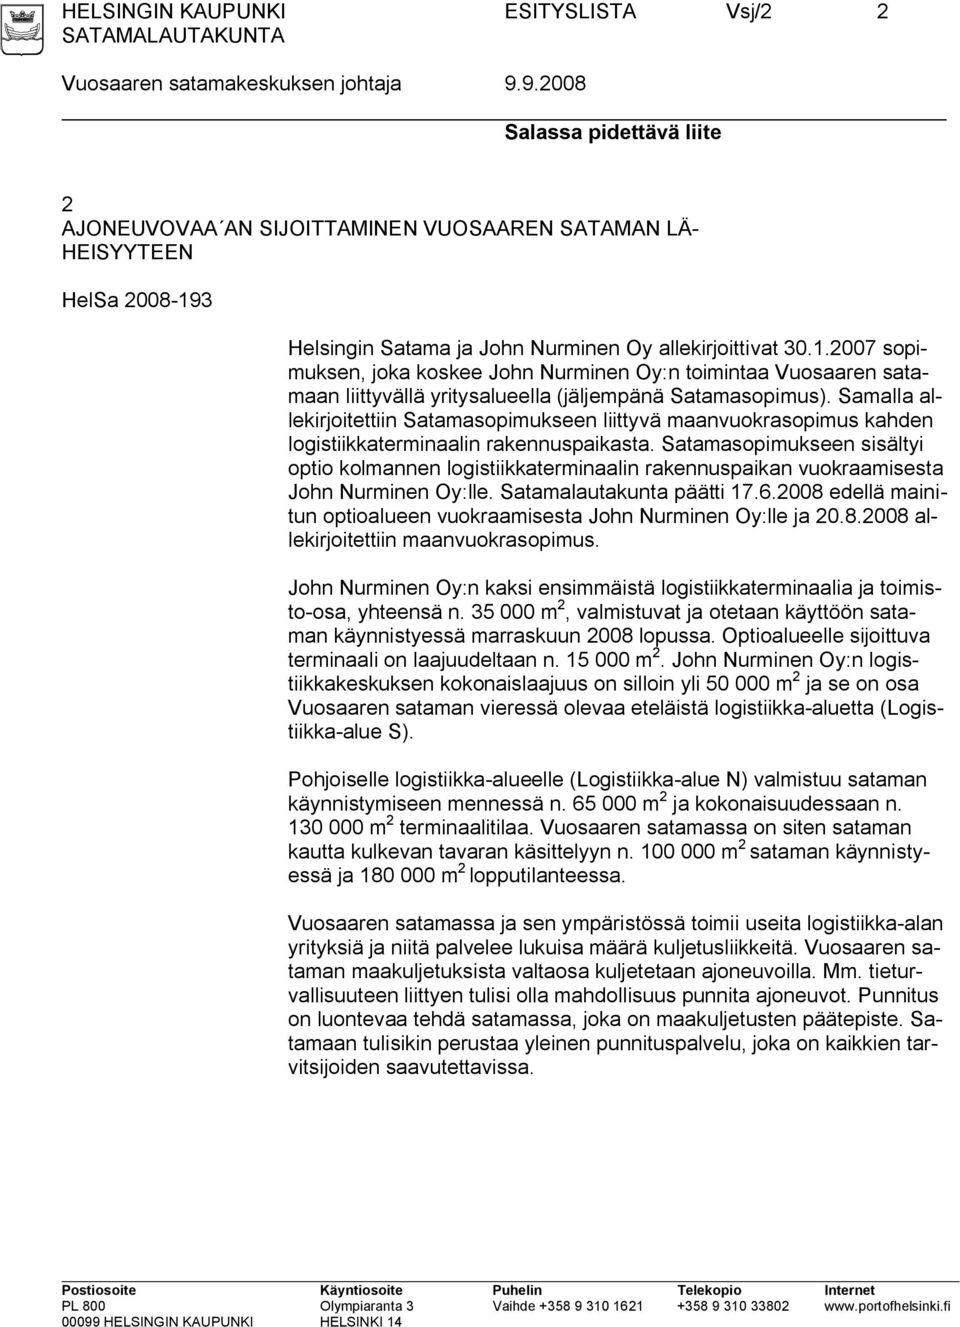 3 Helsingin Satama ja John Nurminen Oy allekirjoittivat 30.1.2007 sopimuksen, joka koskee John Nurminen Oy:n toimintaa Vuosaaren satamaan liittyvällä yritysalueella (jäljempänä Satamasopimus).